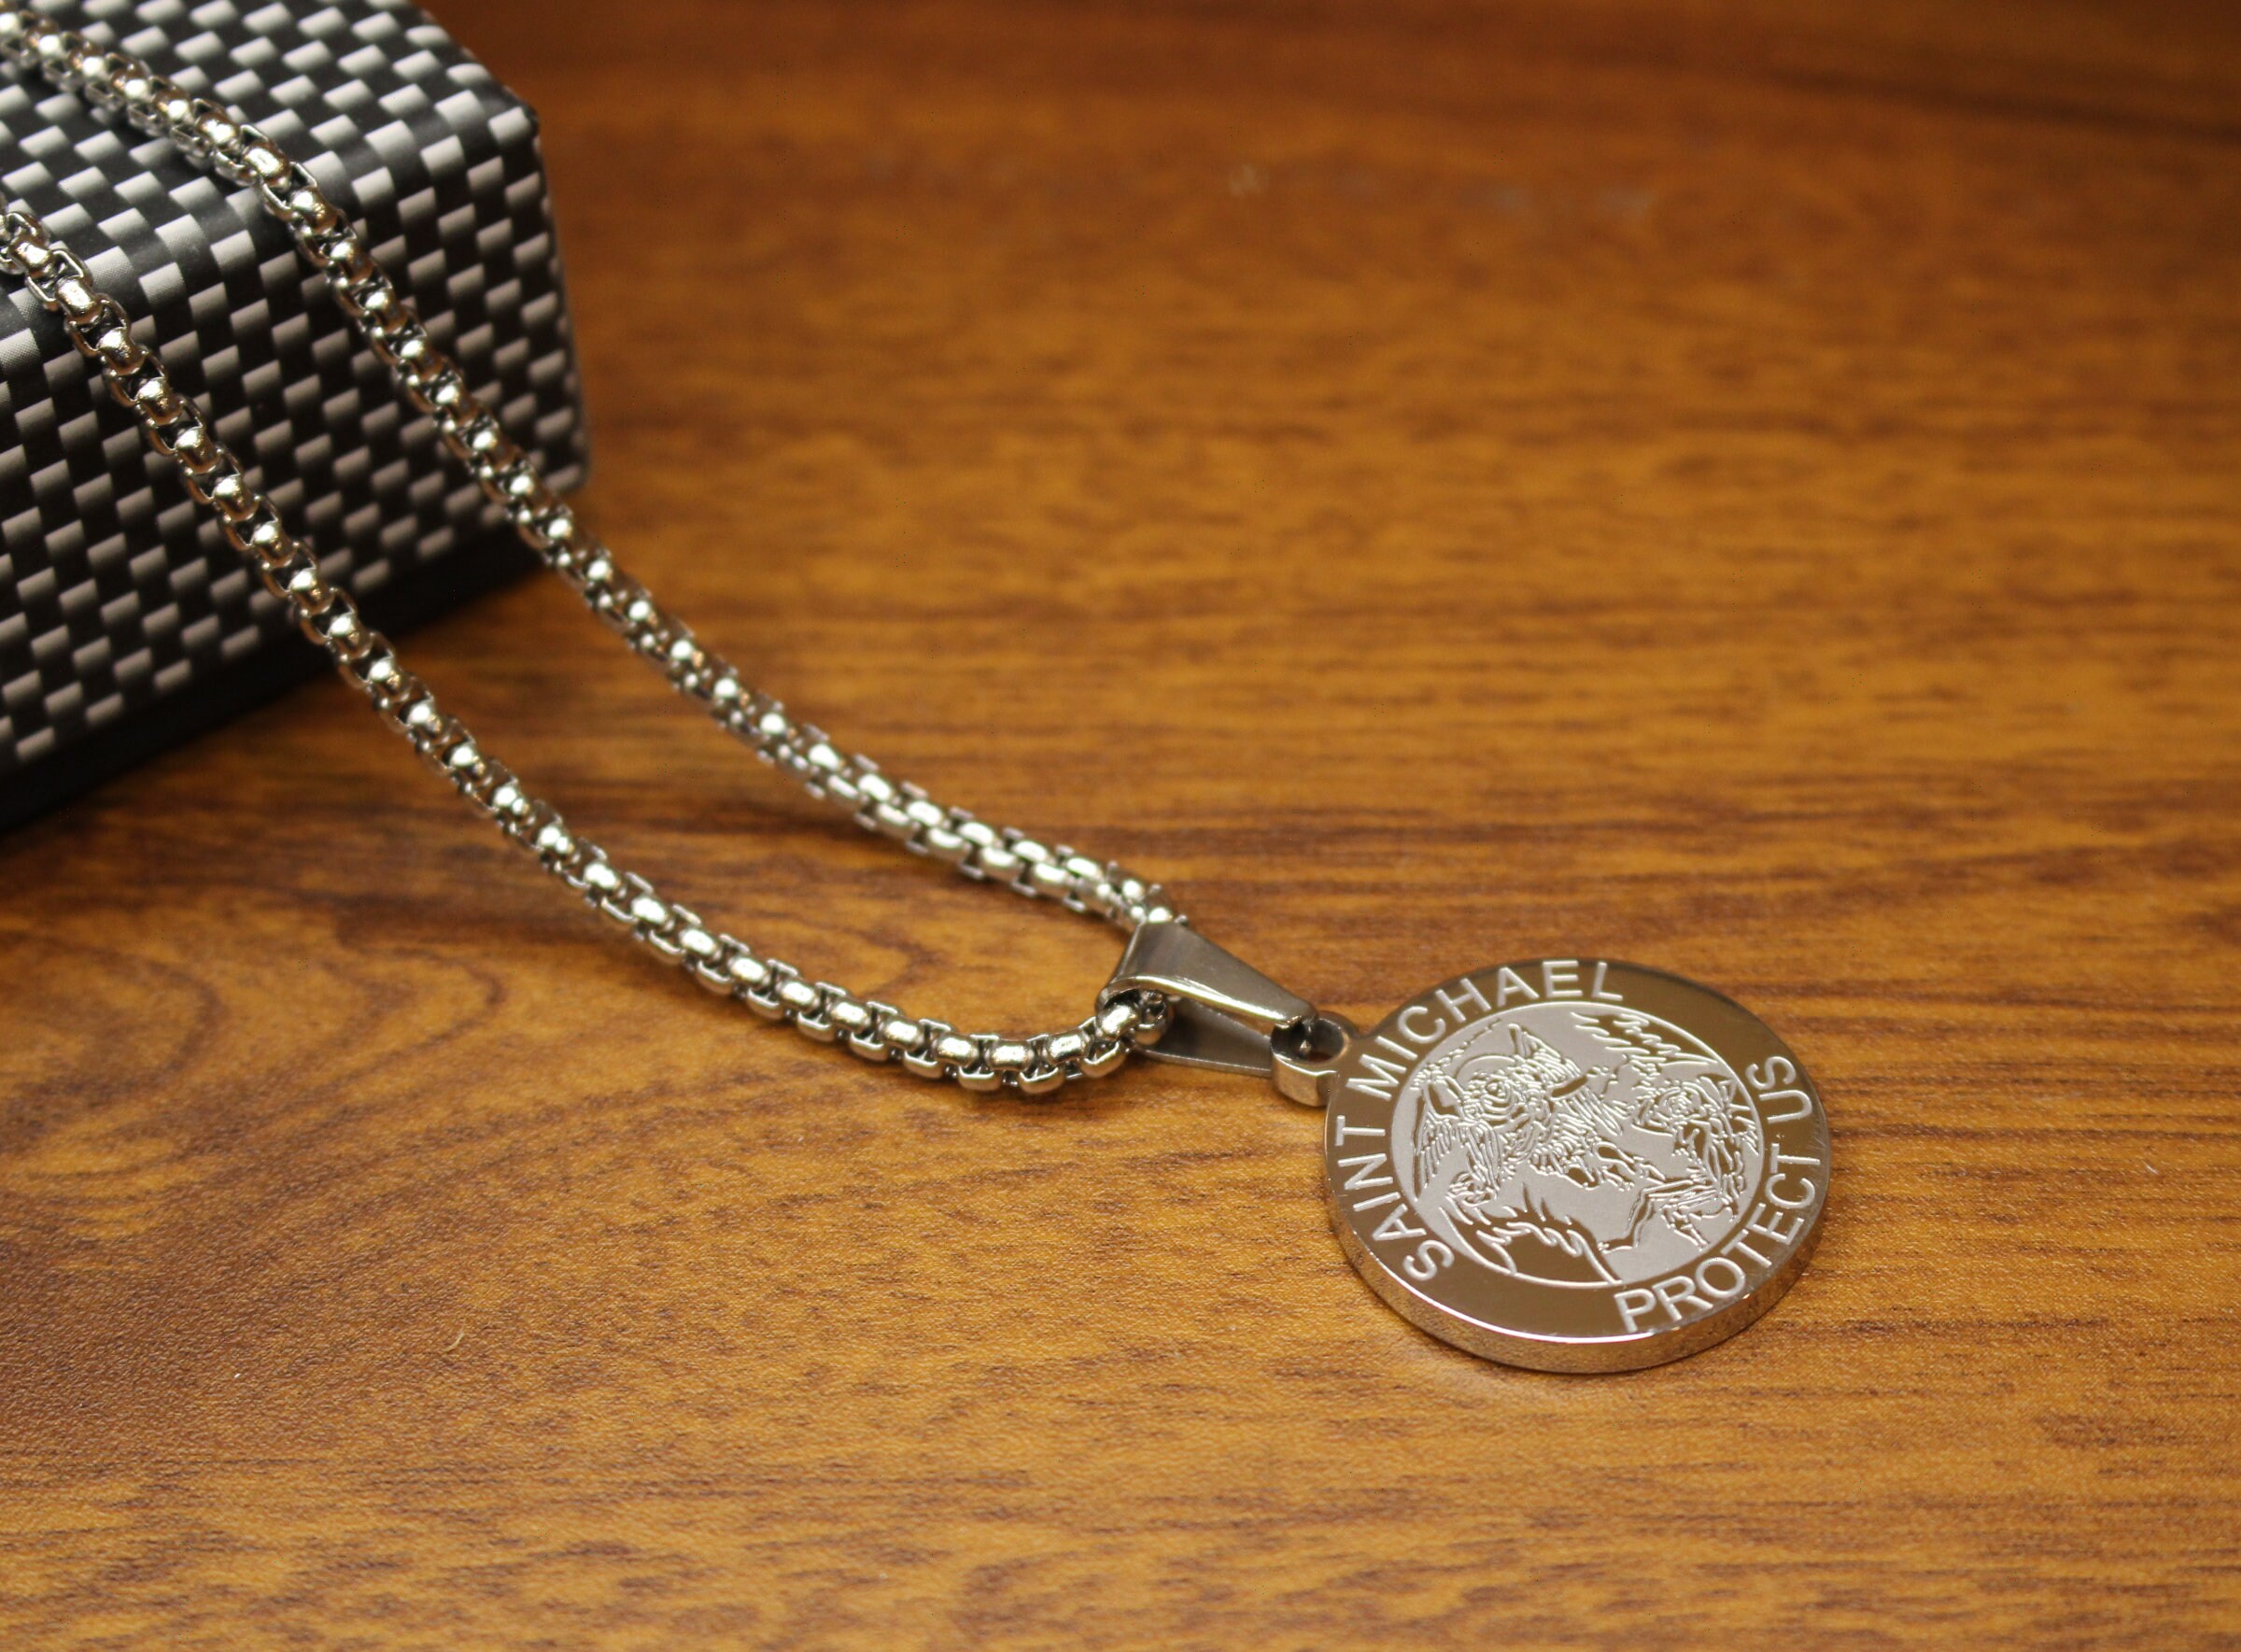 Saint Michael medal necklace St. Michael pendantReligious | Etsy